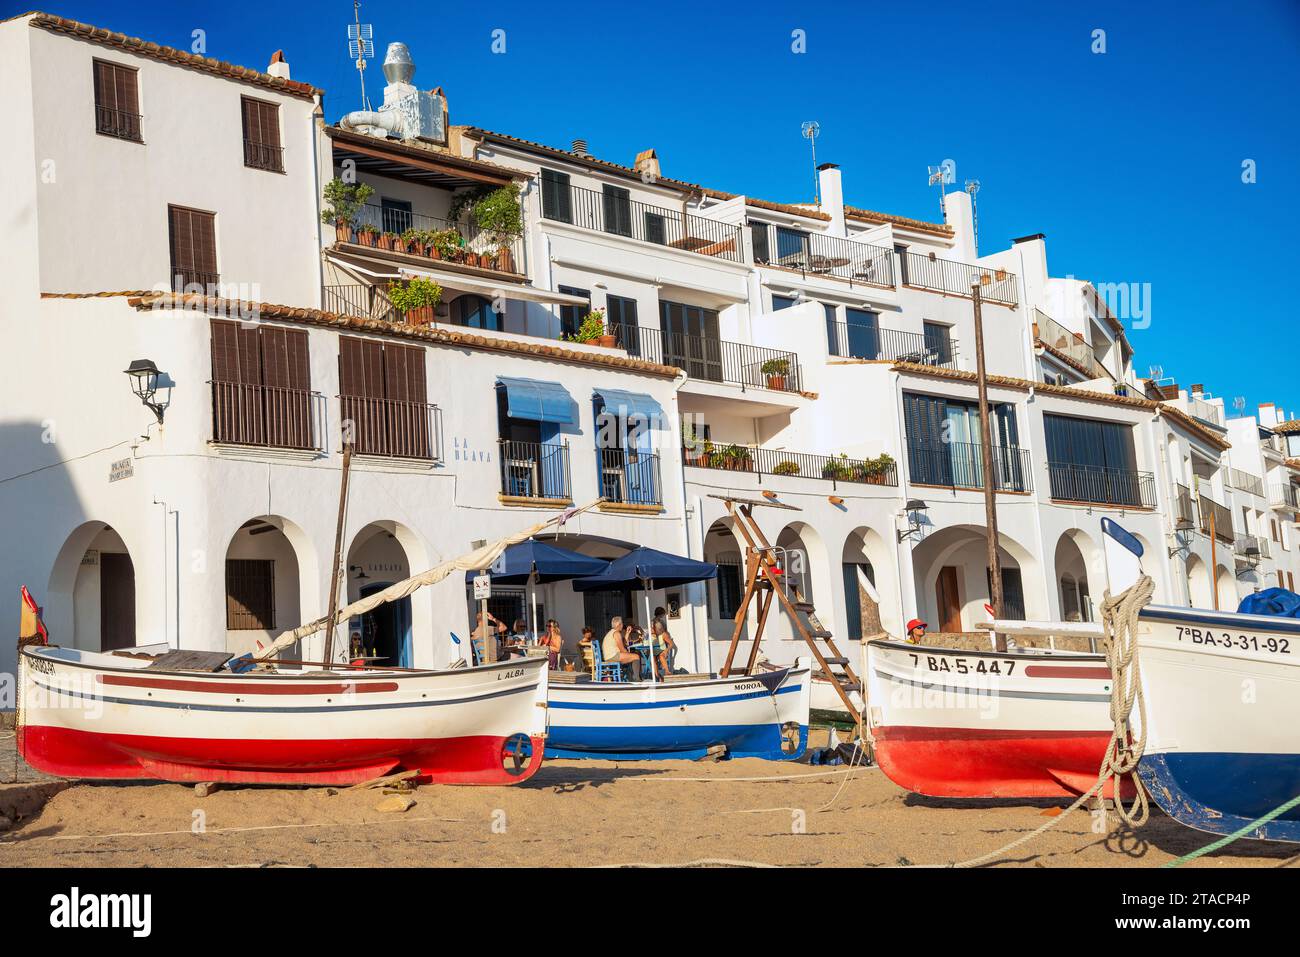 L'originale villaggio turistico di Calella de Palafrugell con barche a vela sulla sua spiaggia sabbiosa sulla Costa Brava, Girona, Spagna Foto Stock